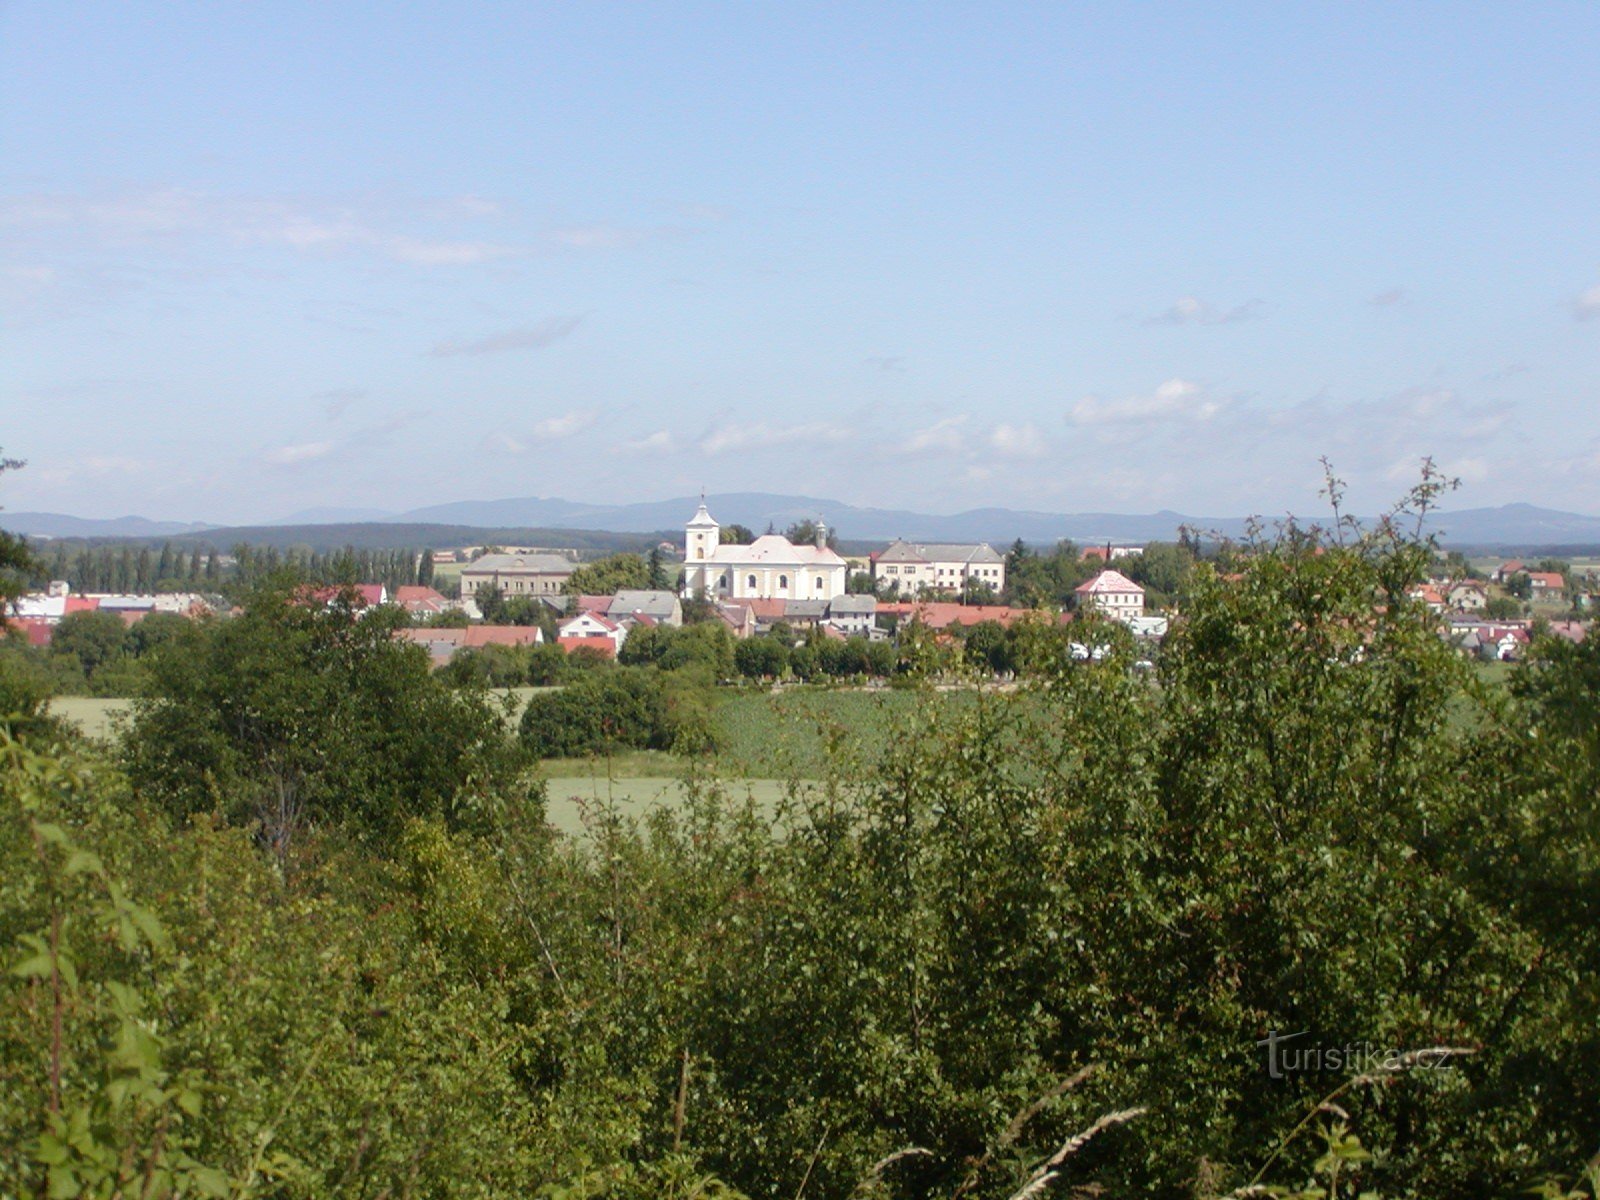 Veselský háj - Kákovice, näkymä Vysoké Veselílle ja Kozák-harjulle taustalla